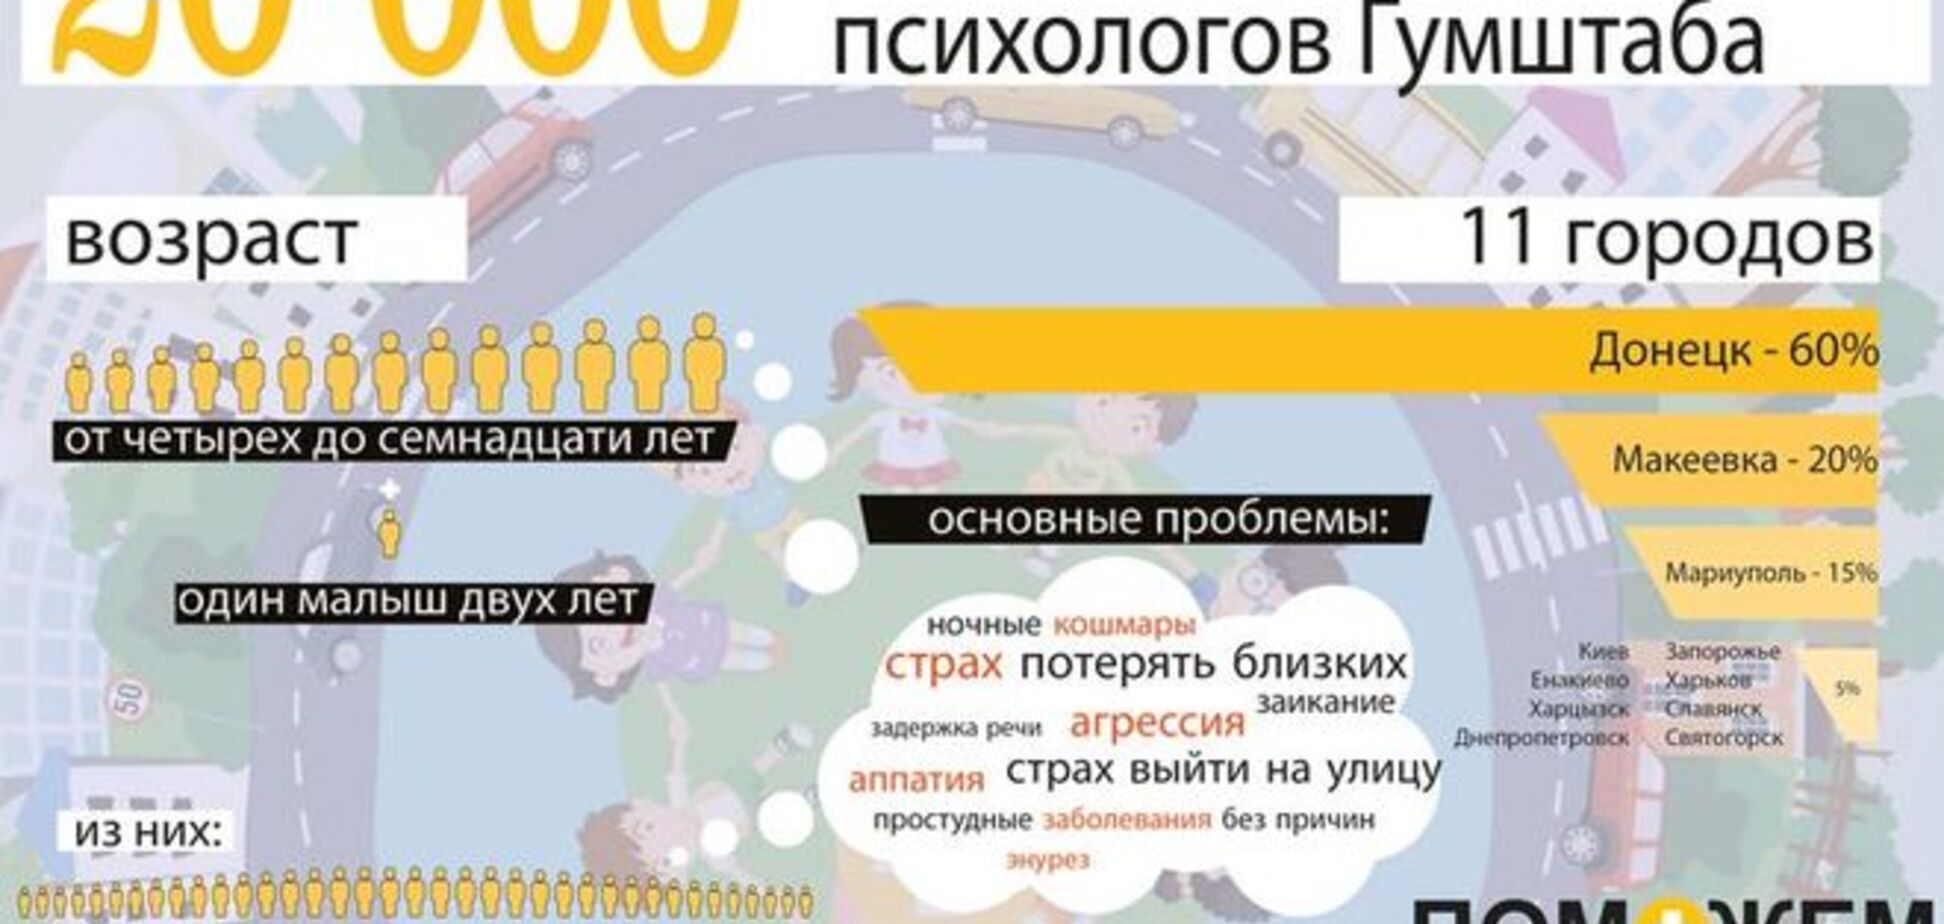 Психологи Штаба Ахметова помогли 20 тыс. детей Донбасса: инфографика